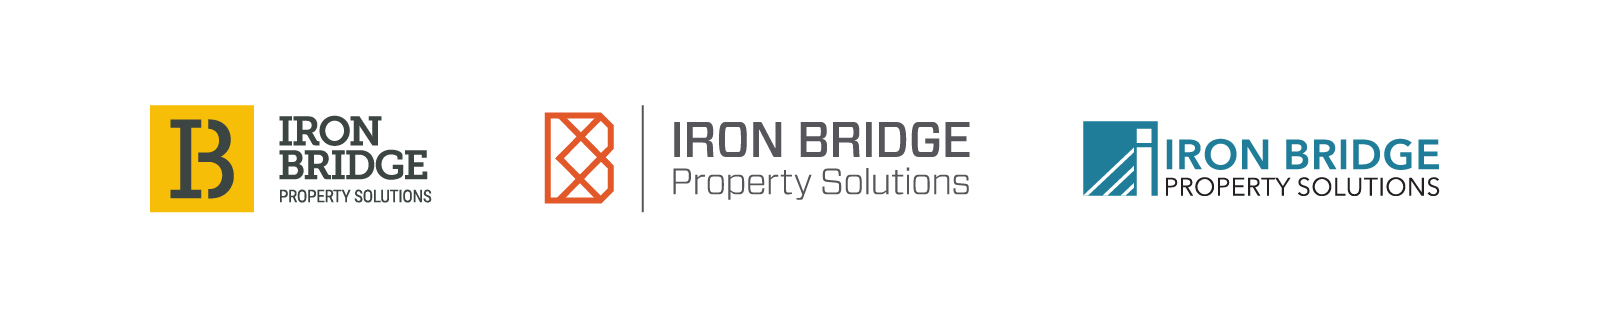 IronBridge Property Solutions – Typographic Logo Concepts